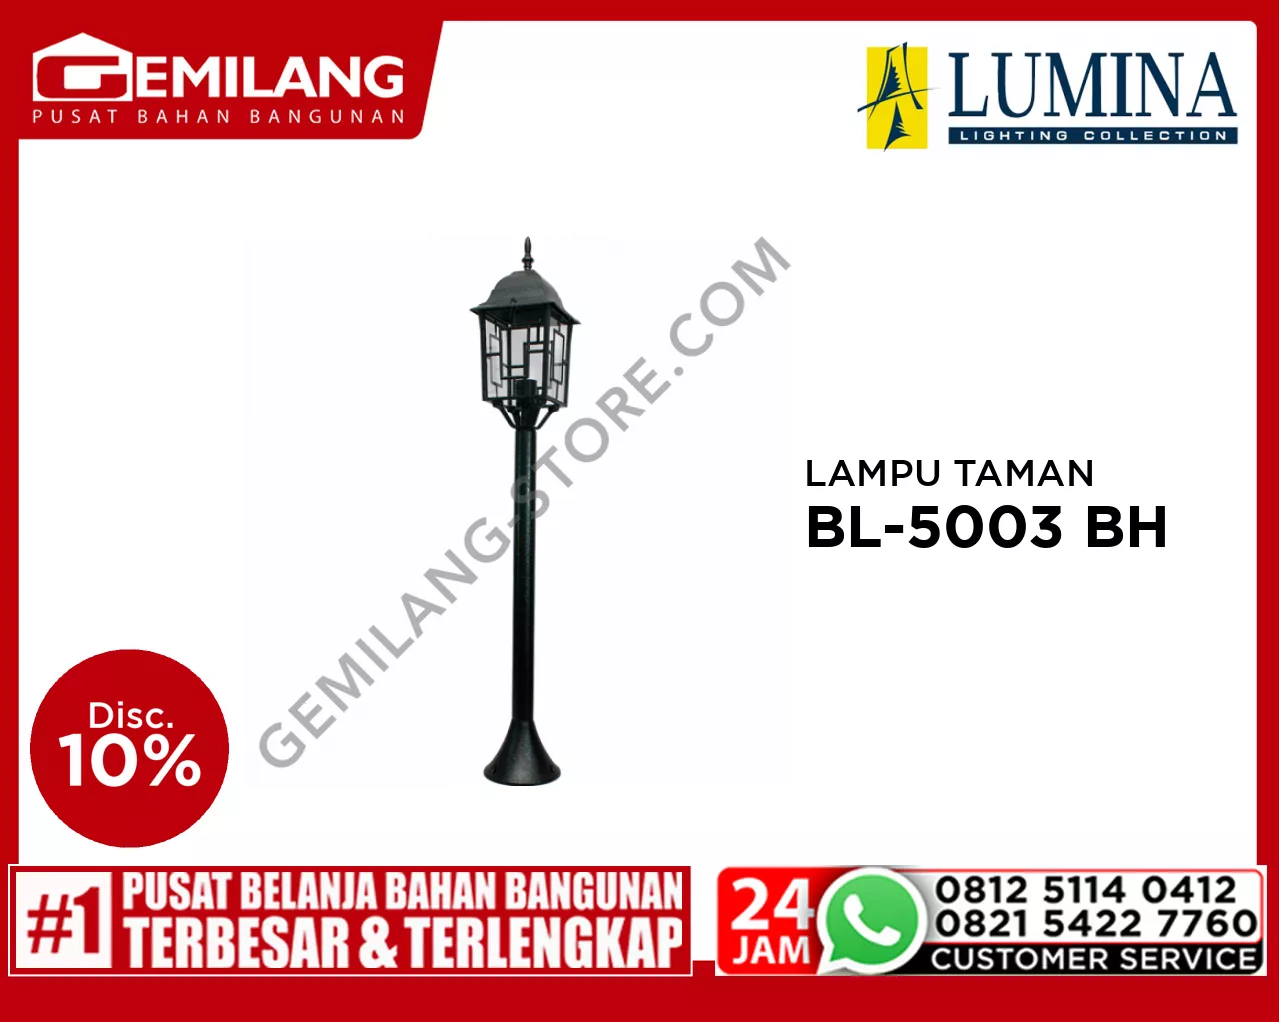 LAMPU TAMAN BL-5003 BH